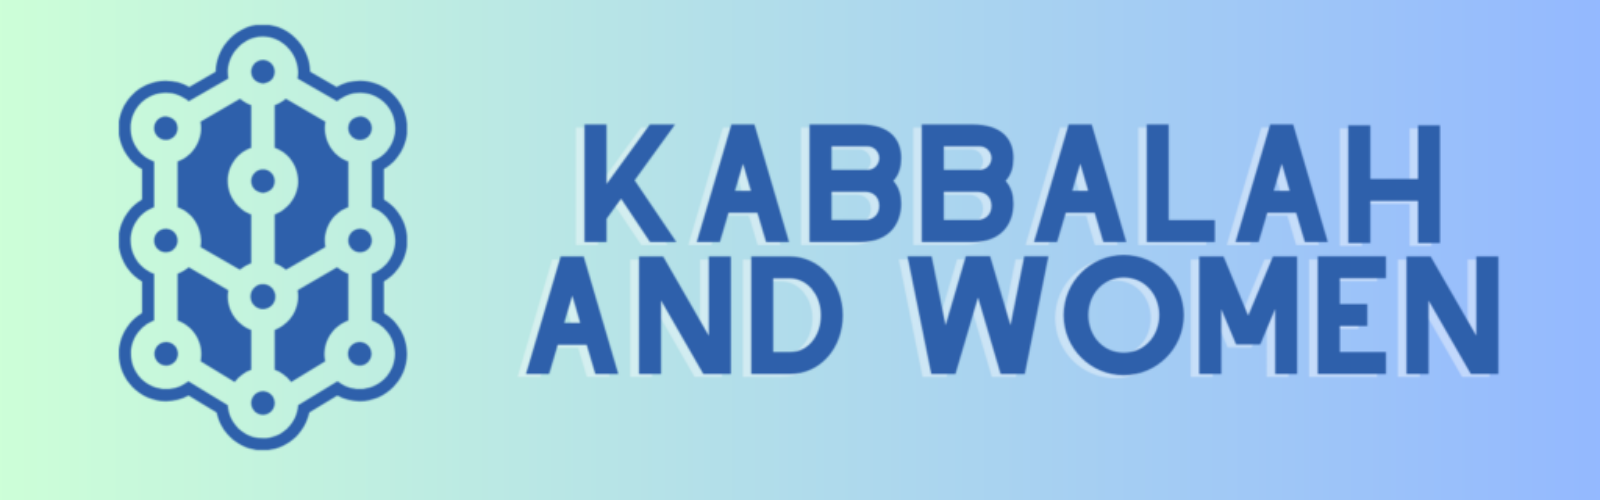 Kabbalah and women (1)